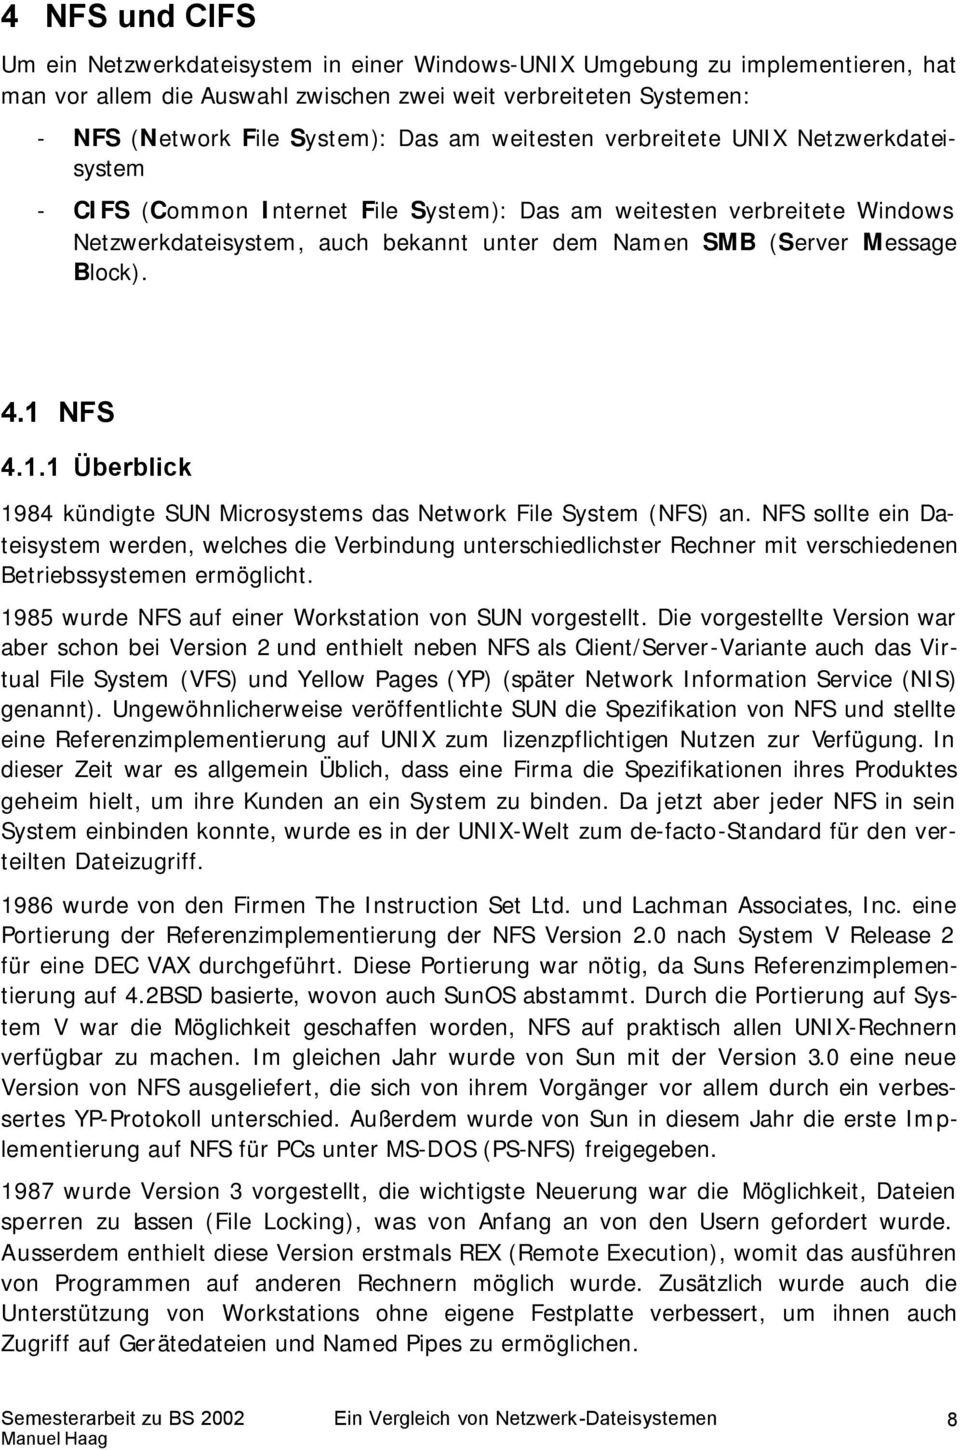 4.1 NFS 4.1.1 Überblick 1984 kündigte SUN Microsystems das Network File System (NFS) an.